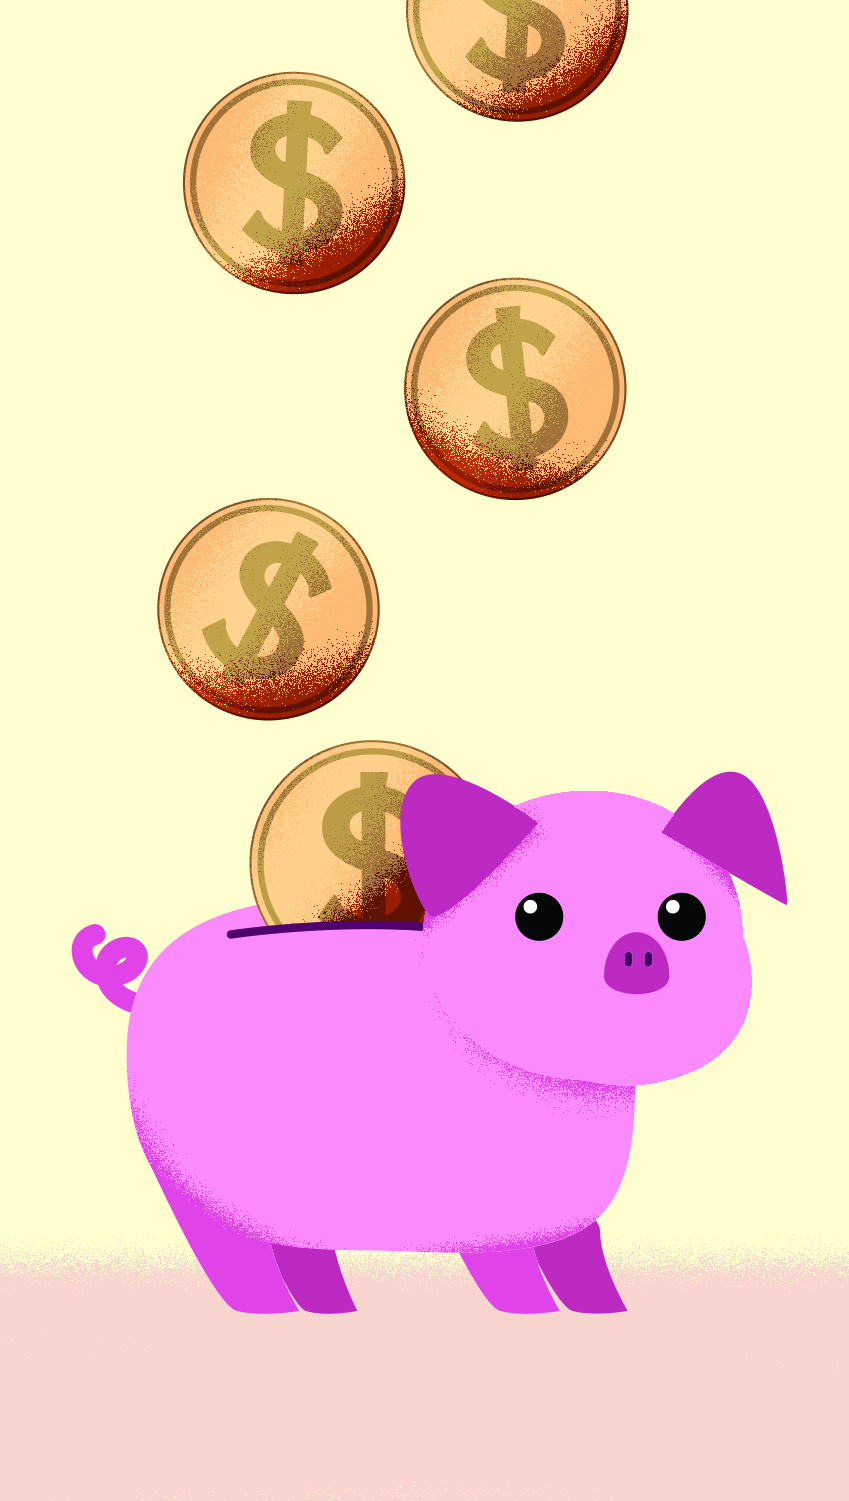 Image Caption: Illustration of a pink piggy bank.